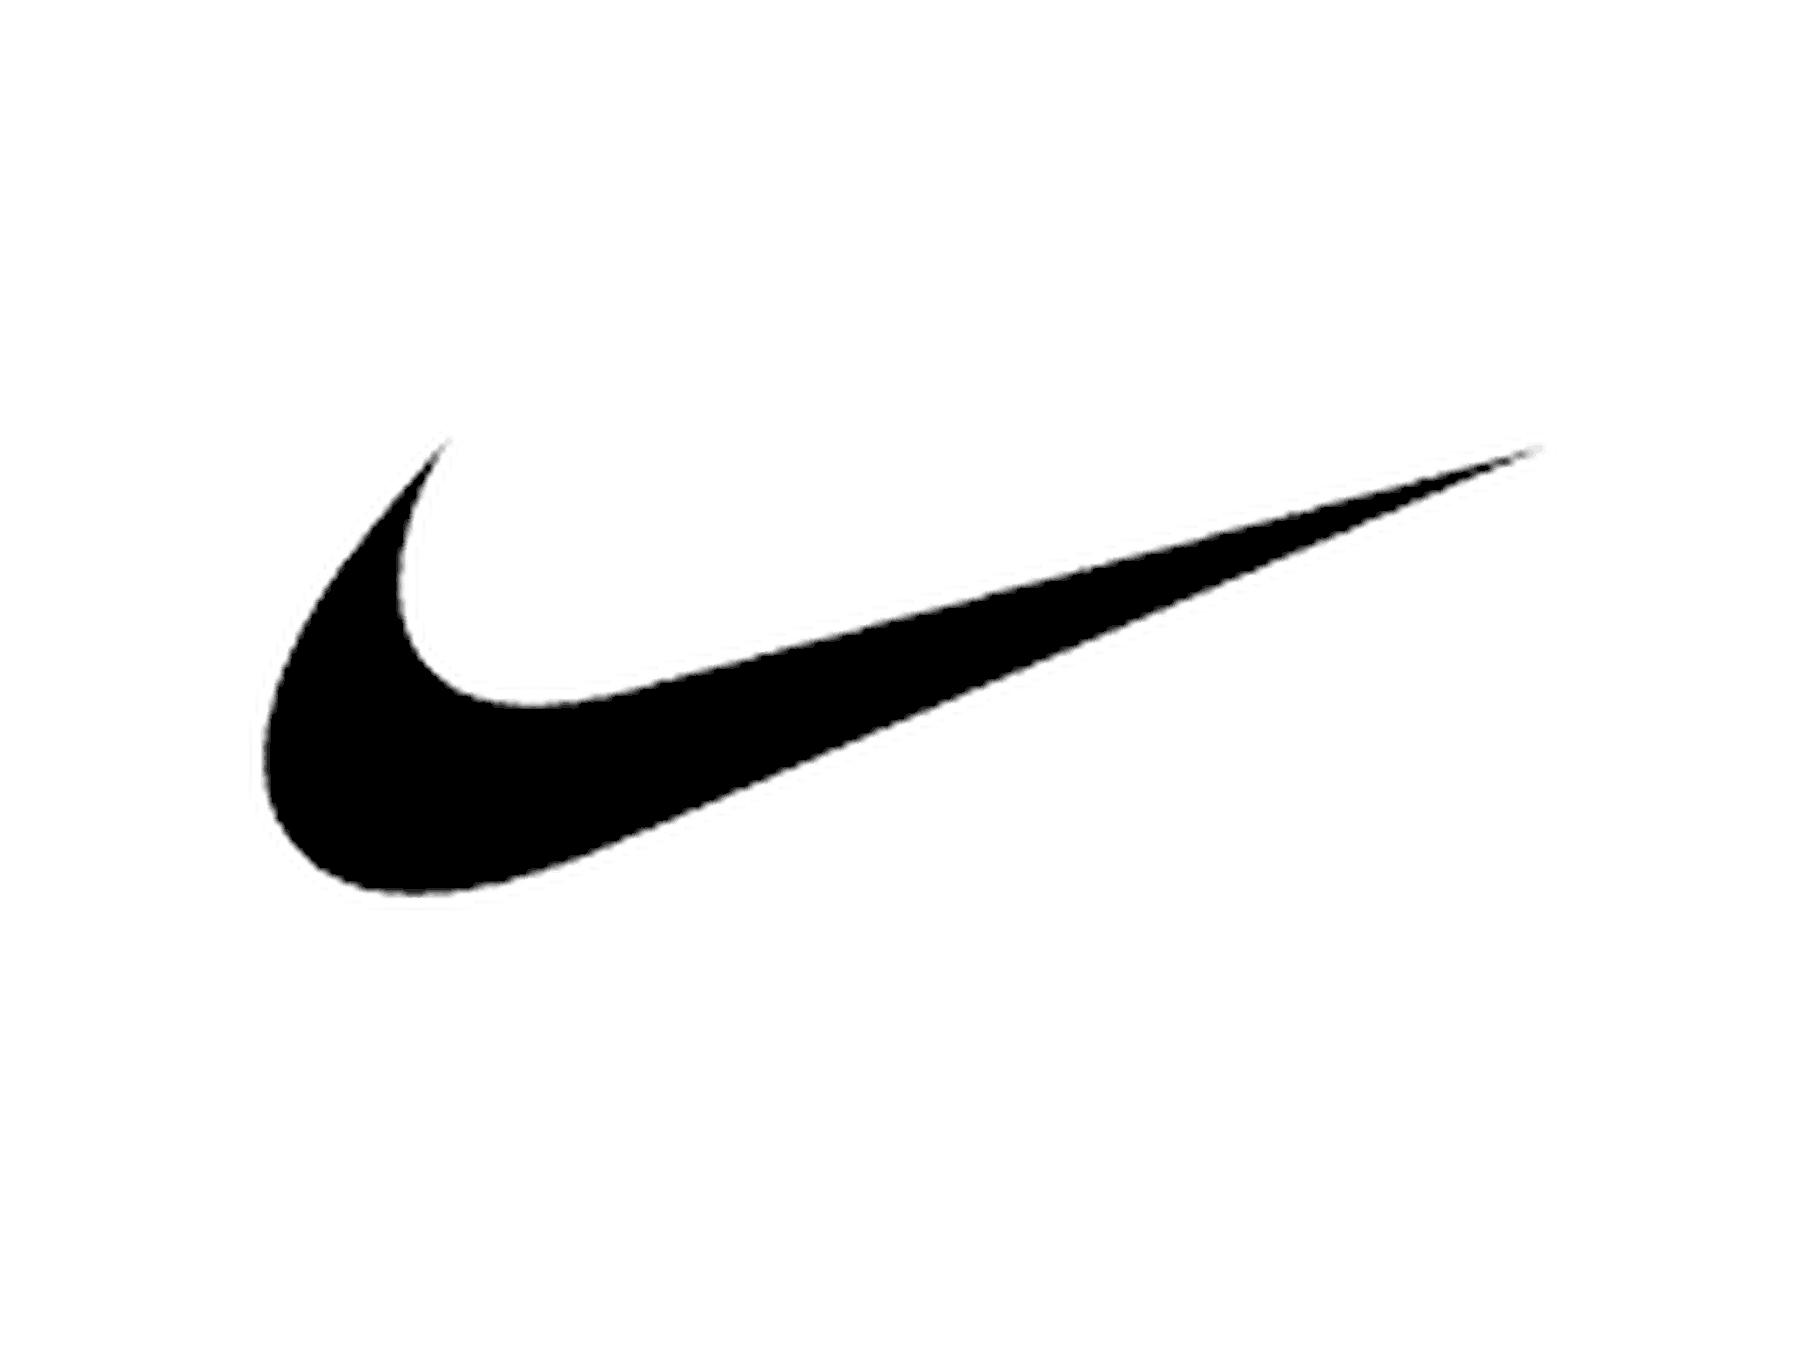 Nike kody rabatowe